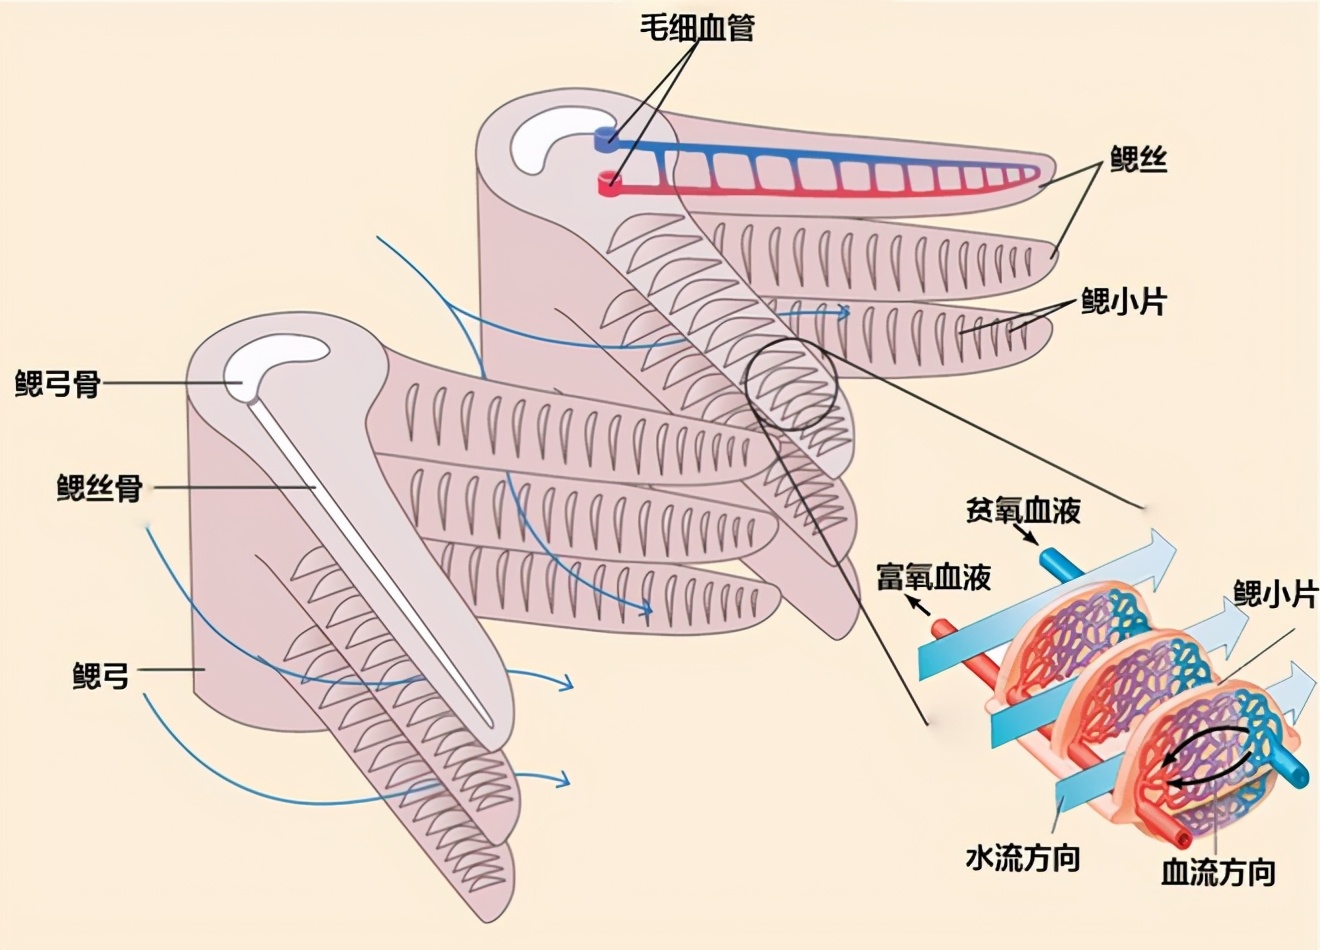 認識魚鰓及其呼吸特點：鰓是魚類最基本、最起碼、最重要的器官